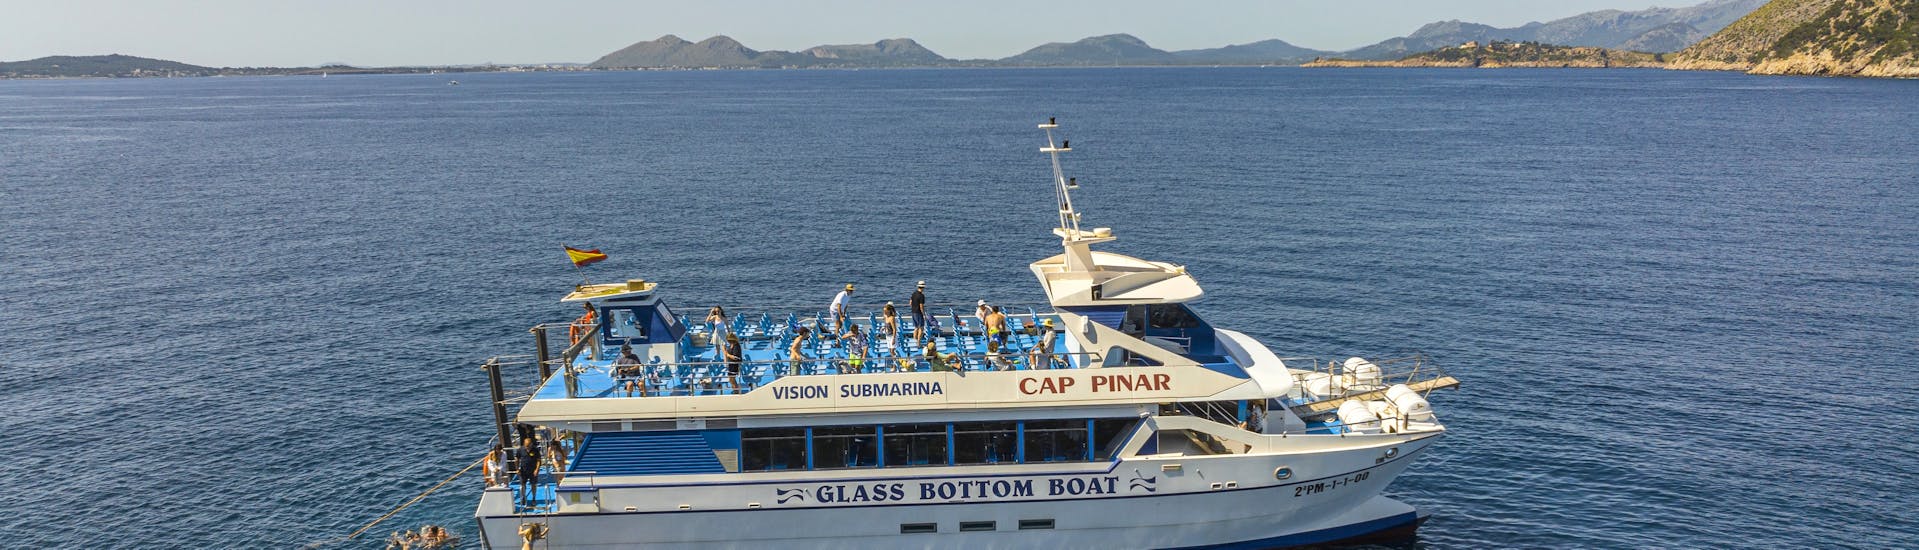 Menschen genießen die Zeit auf dem Boot während der Katamaran-Tour durch die Bucht von Pollença mit Lanchas La Gaviota Pollença.